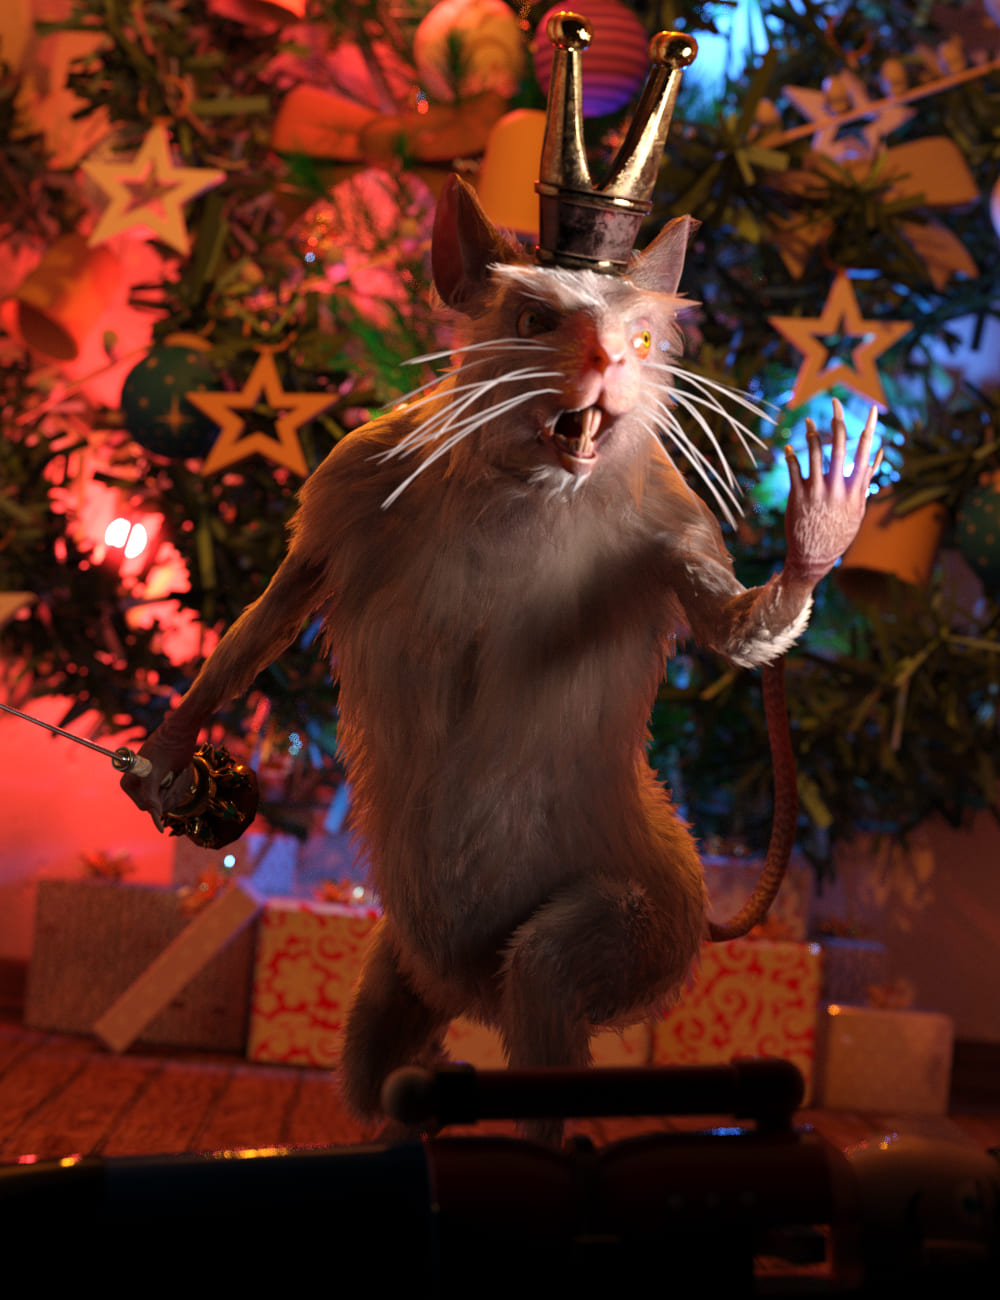 Nutcracker poses for Mouse King_DAZ3D下载站